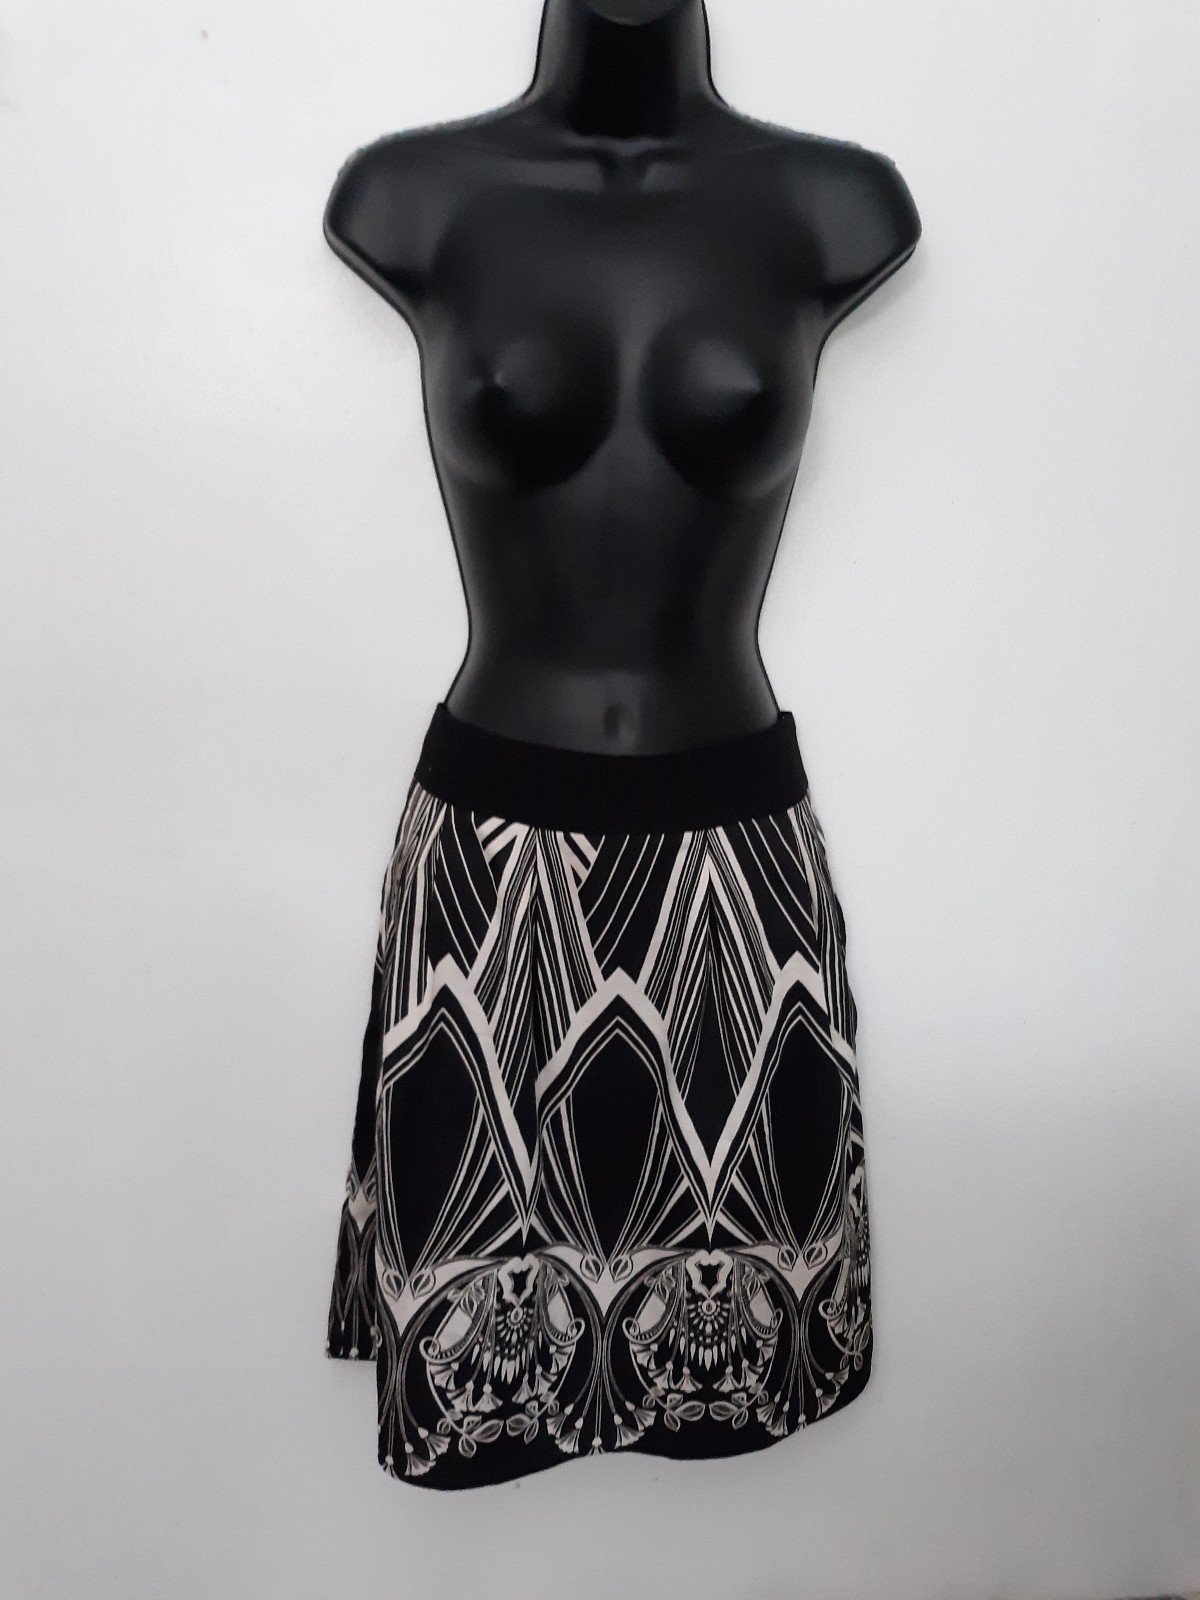 Simple Black and white Worthington skirt GJbKSPi3i Onli